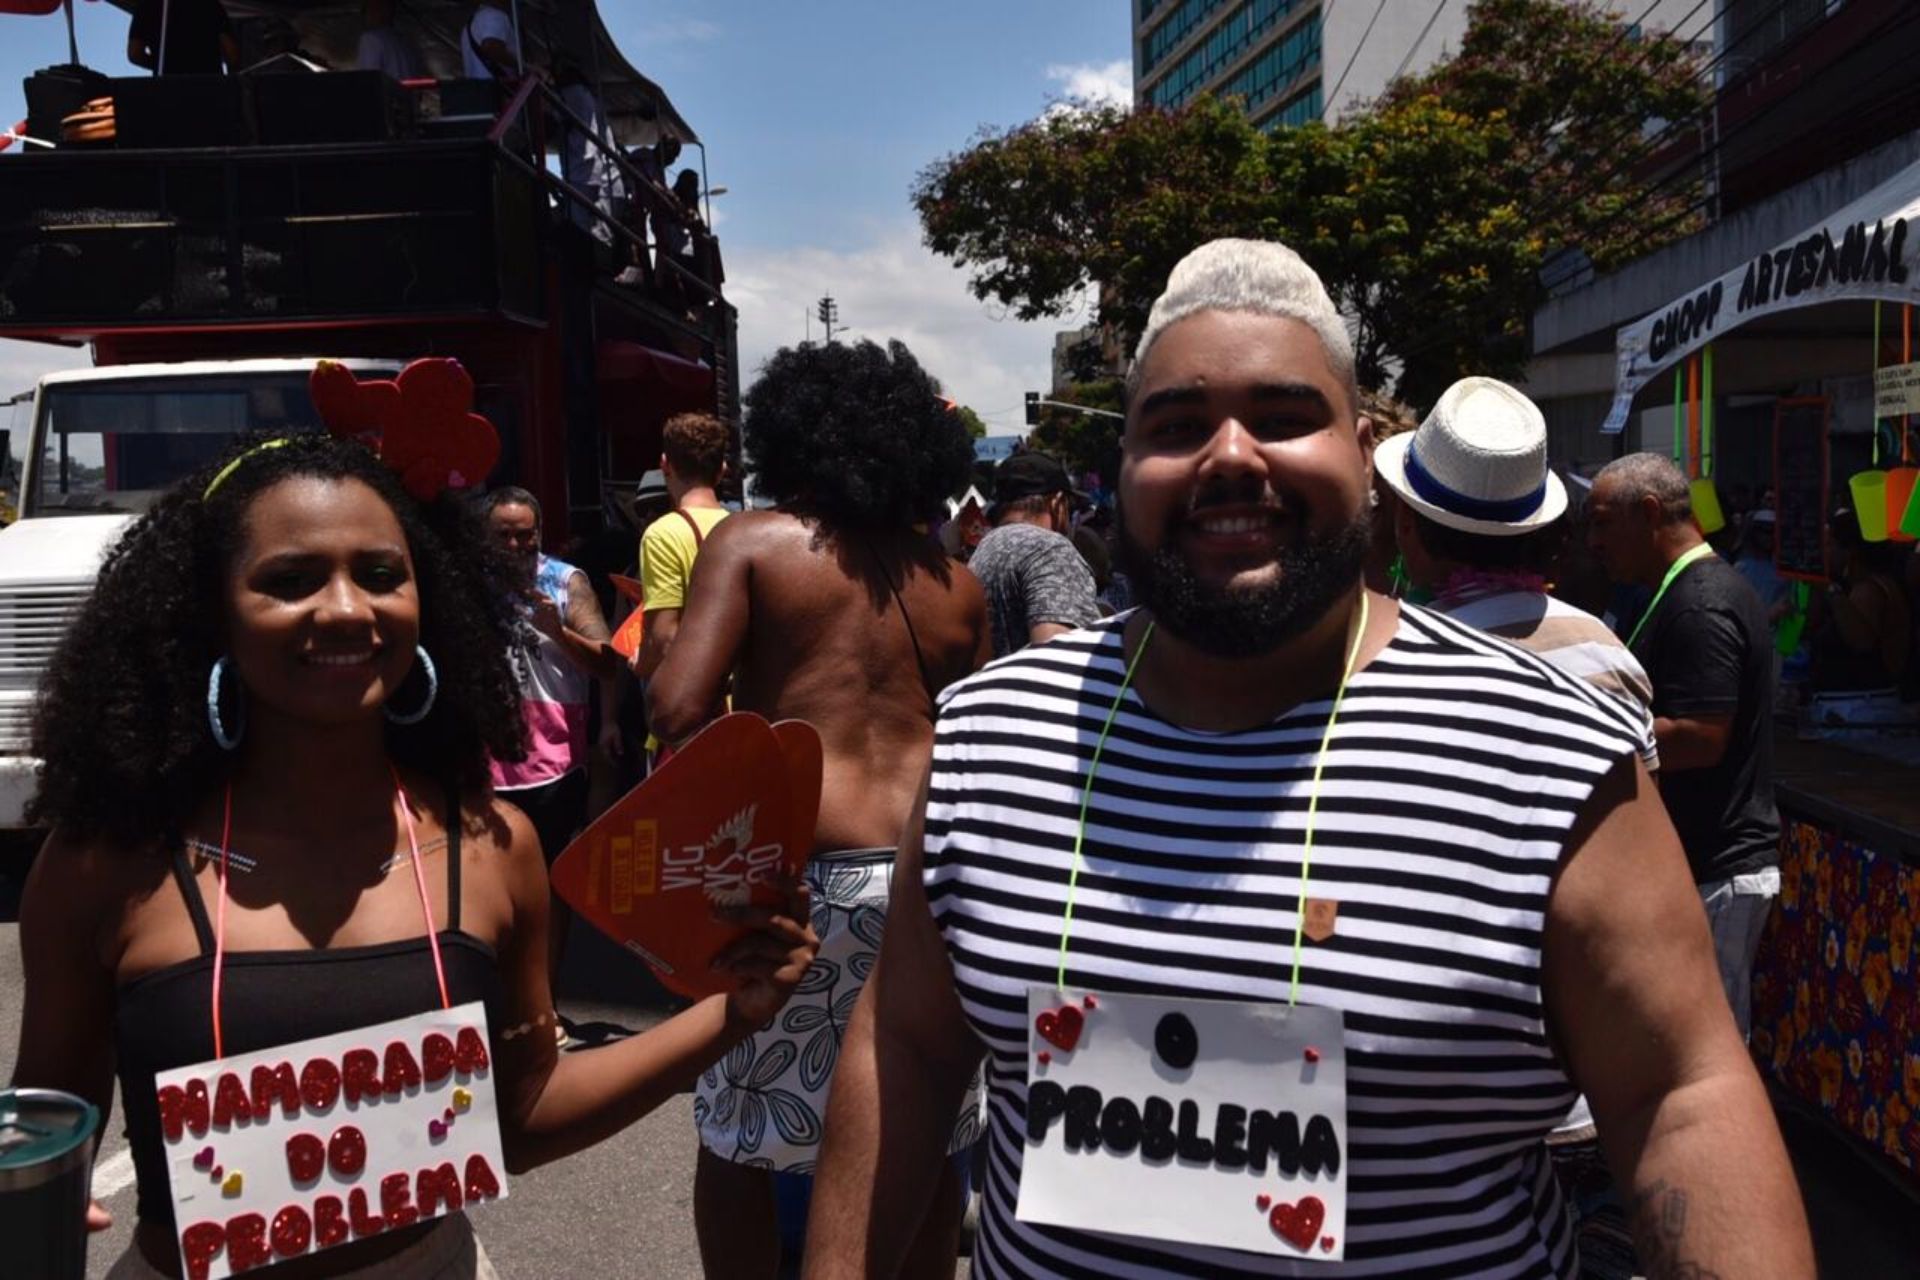 O músico Luiz Felipe Farias Cabral platinou o cabelo para o carnaval. "Fiz Na quinta-feira passada, para o desfile da Chega Mais, onde participei como cantor", conta.